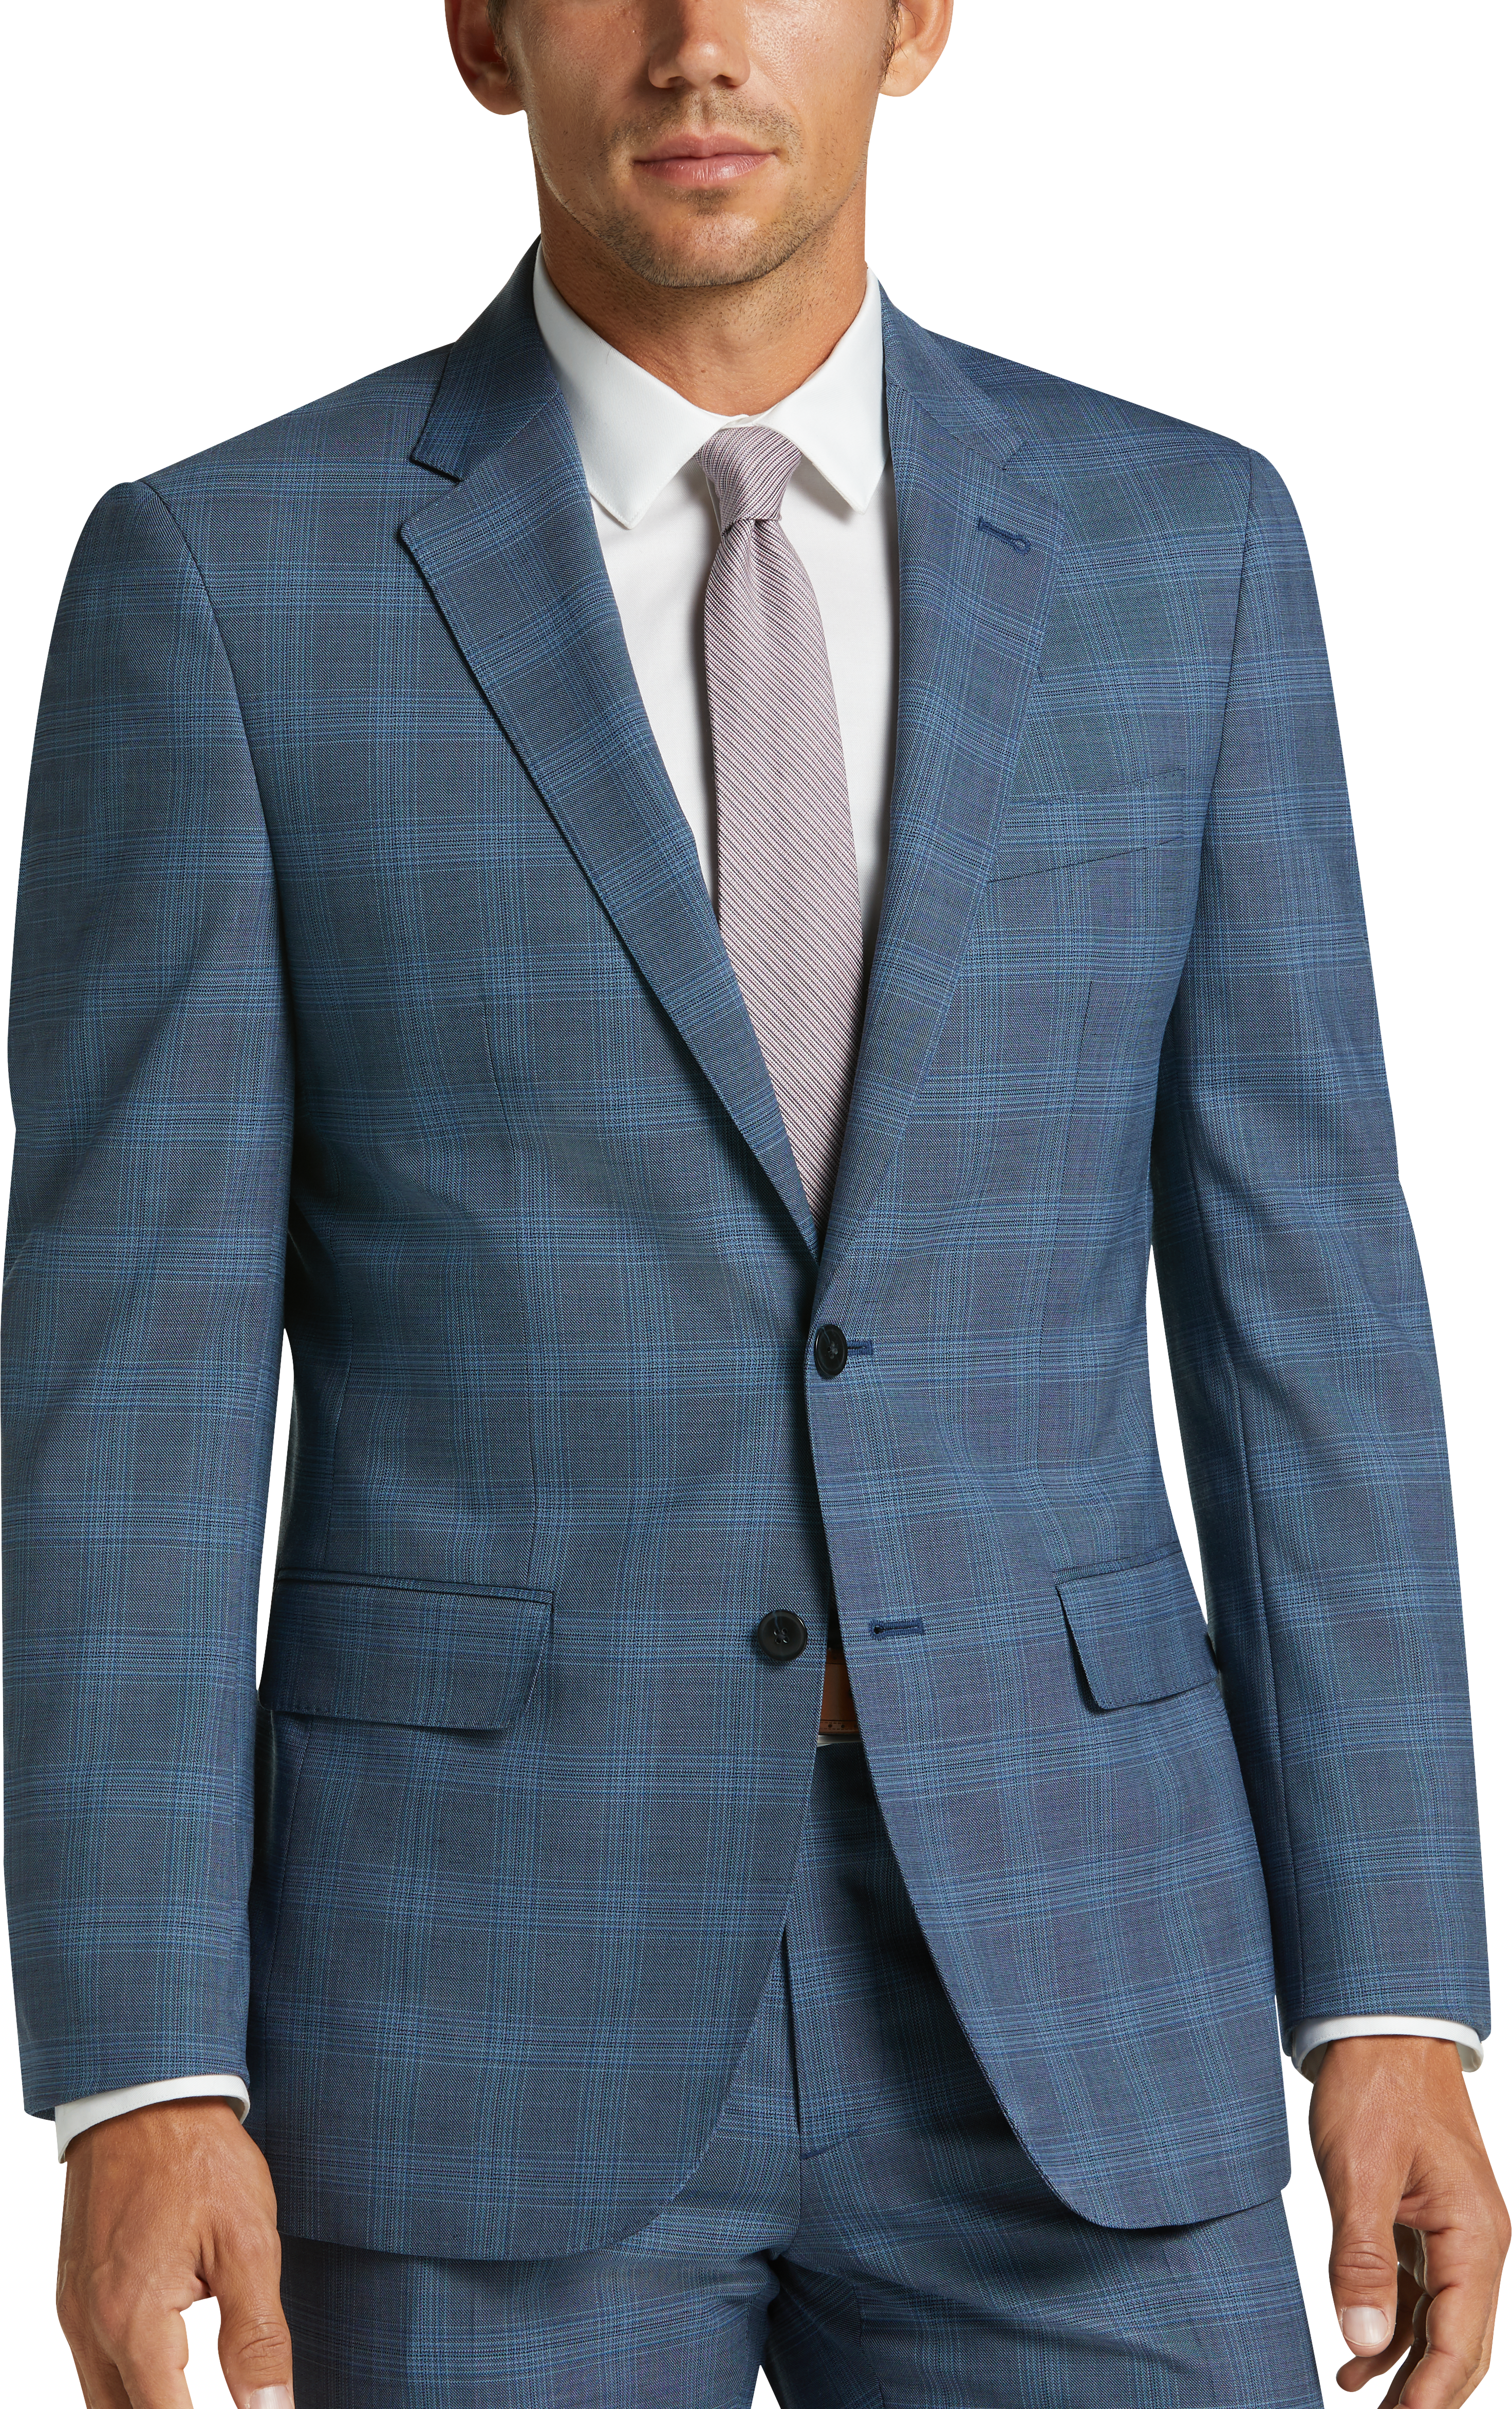 JOE Joseph Abboud Blue Plaid Slim Fit Suit - Men's Suits | Men's Wearhouse